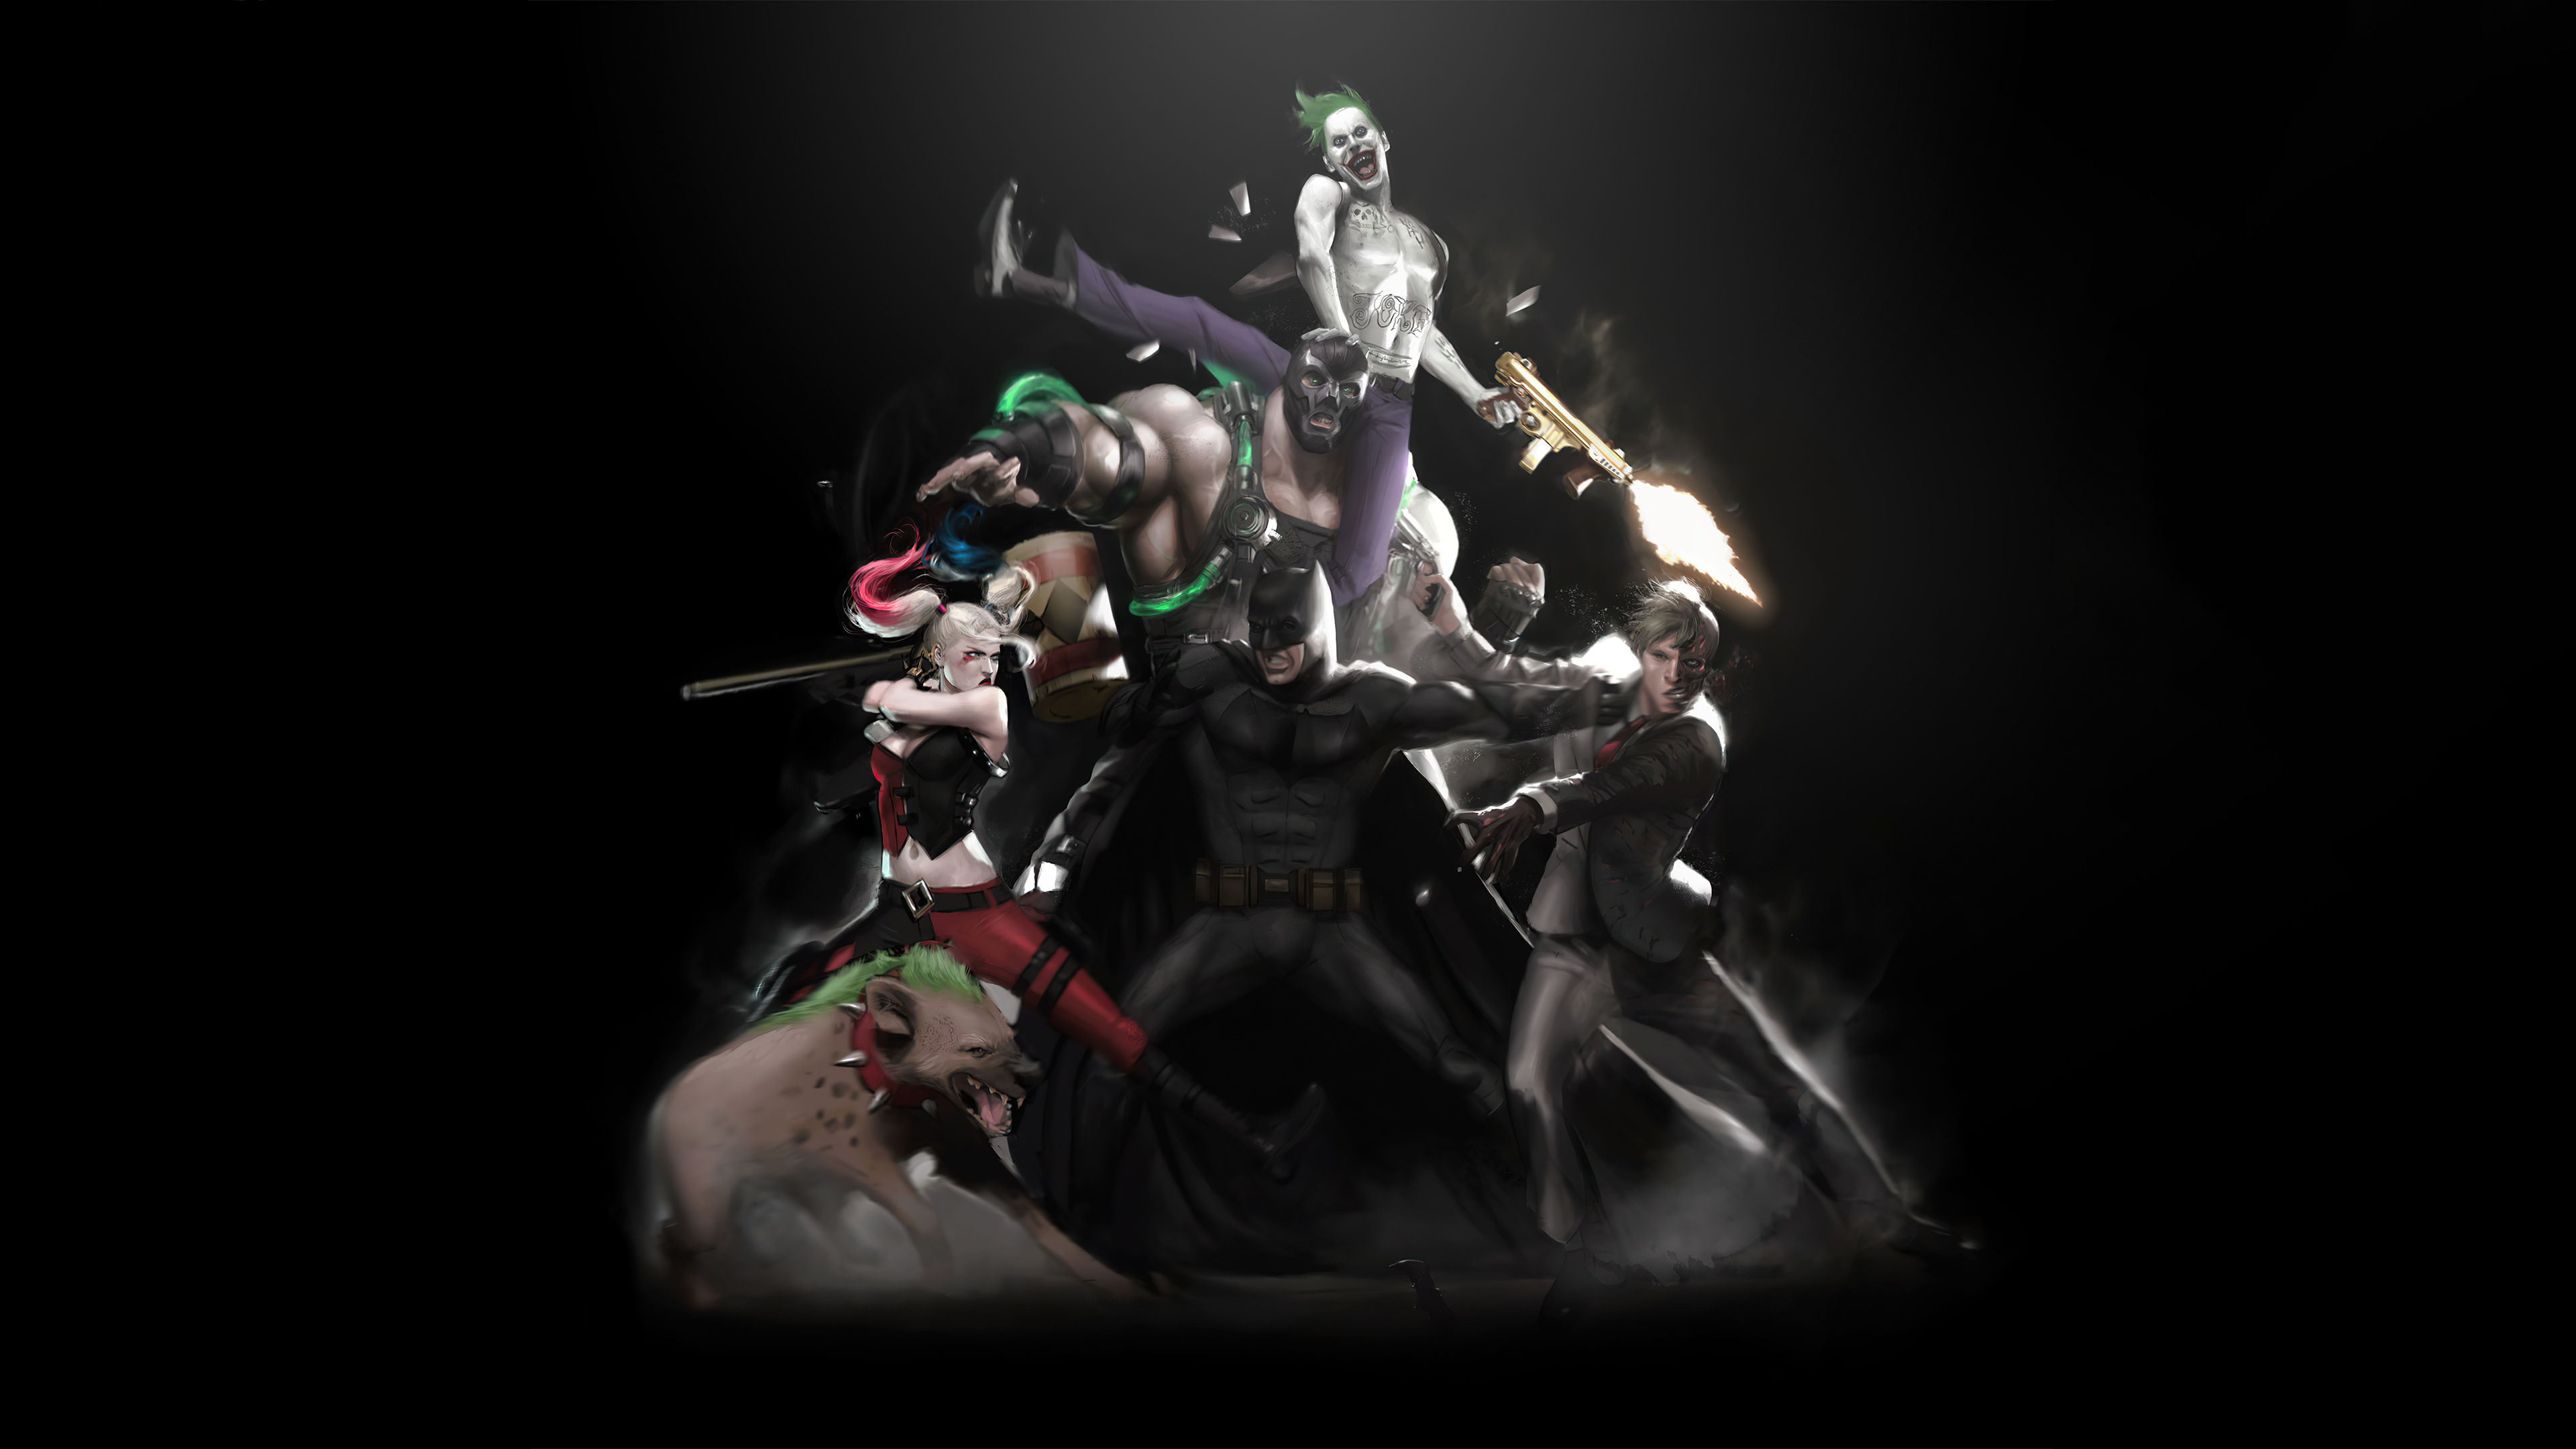 Descarga gratuita de fondo de pantalla para móvil de Historietas, The Batman, Harley Quinn, Guasón, Dc Comics, Dos Caras, Bane (Dc Cómics).